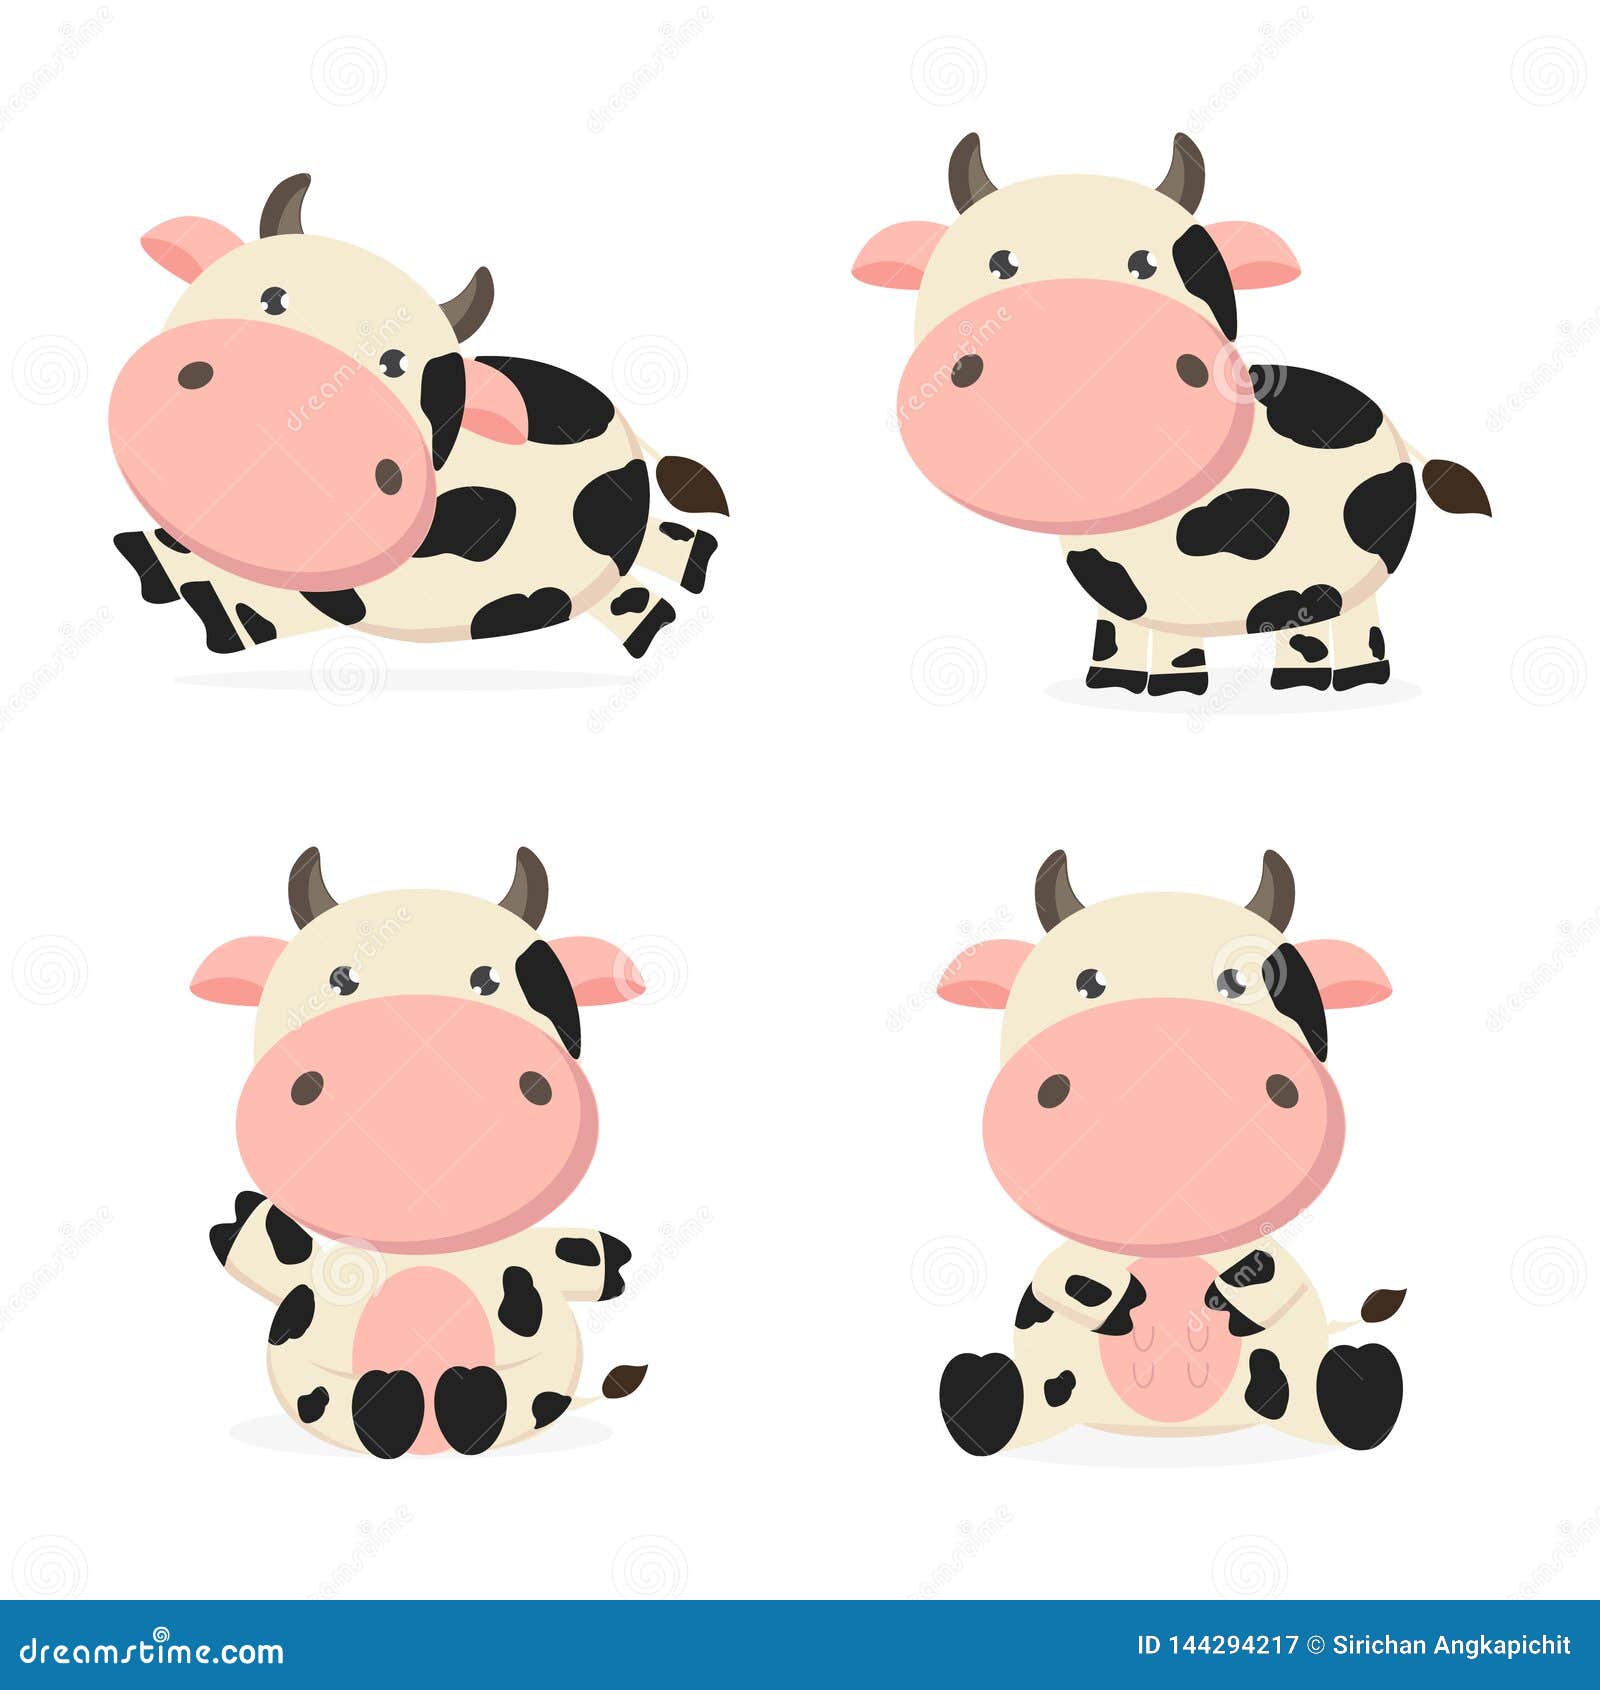 Ilustración de personaje de dibujos animados lindo vaca